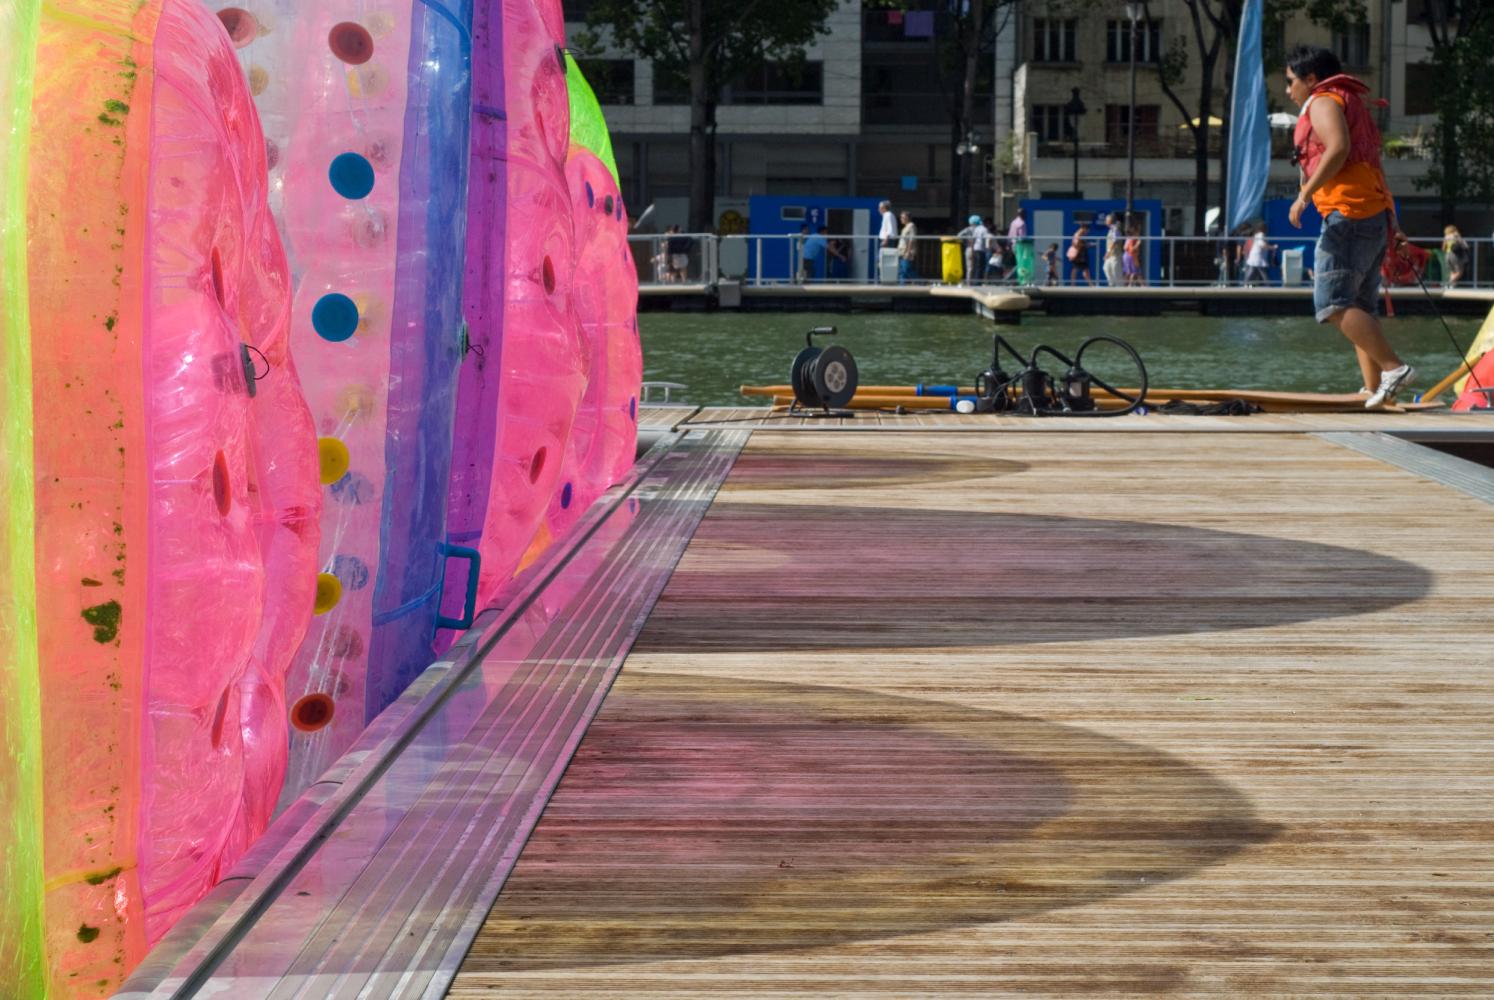 Collées au ponton, trois roues gonflables projettent leurs ombres colorées. Plus loin, une jeune personne en gilet de sauvetage s'apprête à descendre dans une petite embarcation. Paris, août 2010.